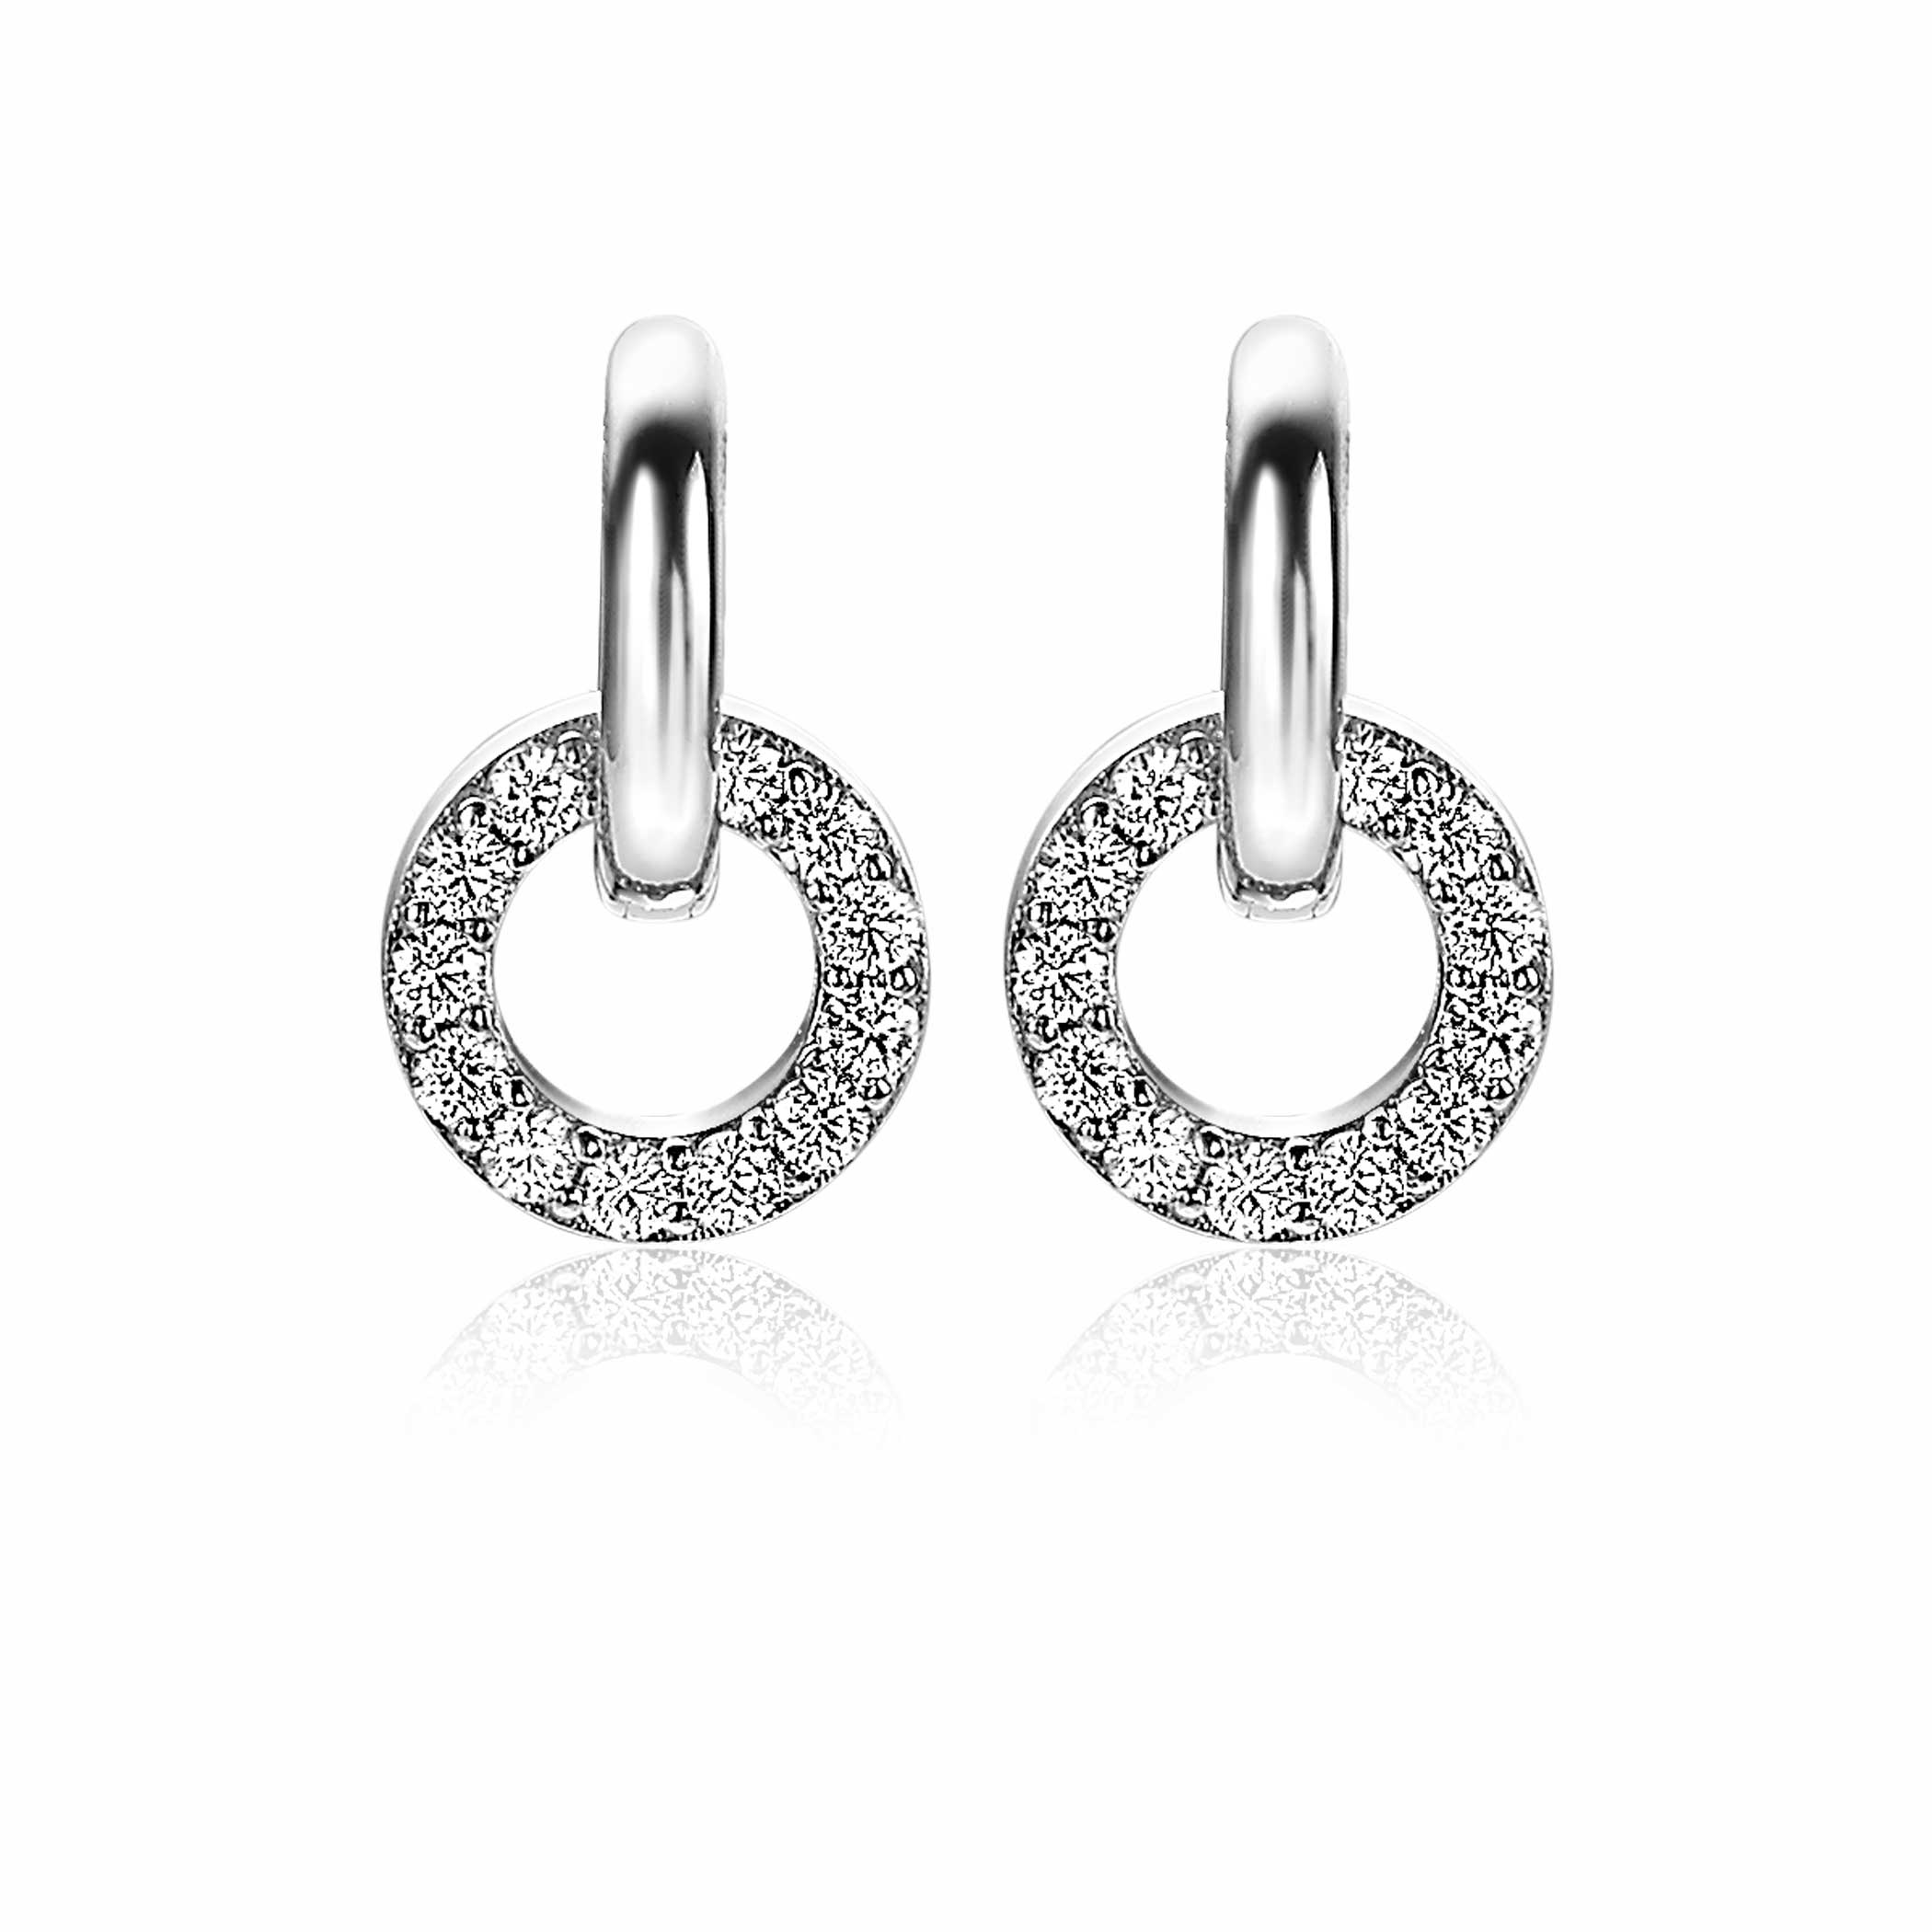 10mm ZINZI Sterling Silver Earrings Pendants Open Circle White Zirconia ZICH2155 (excl. hoop earrings)